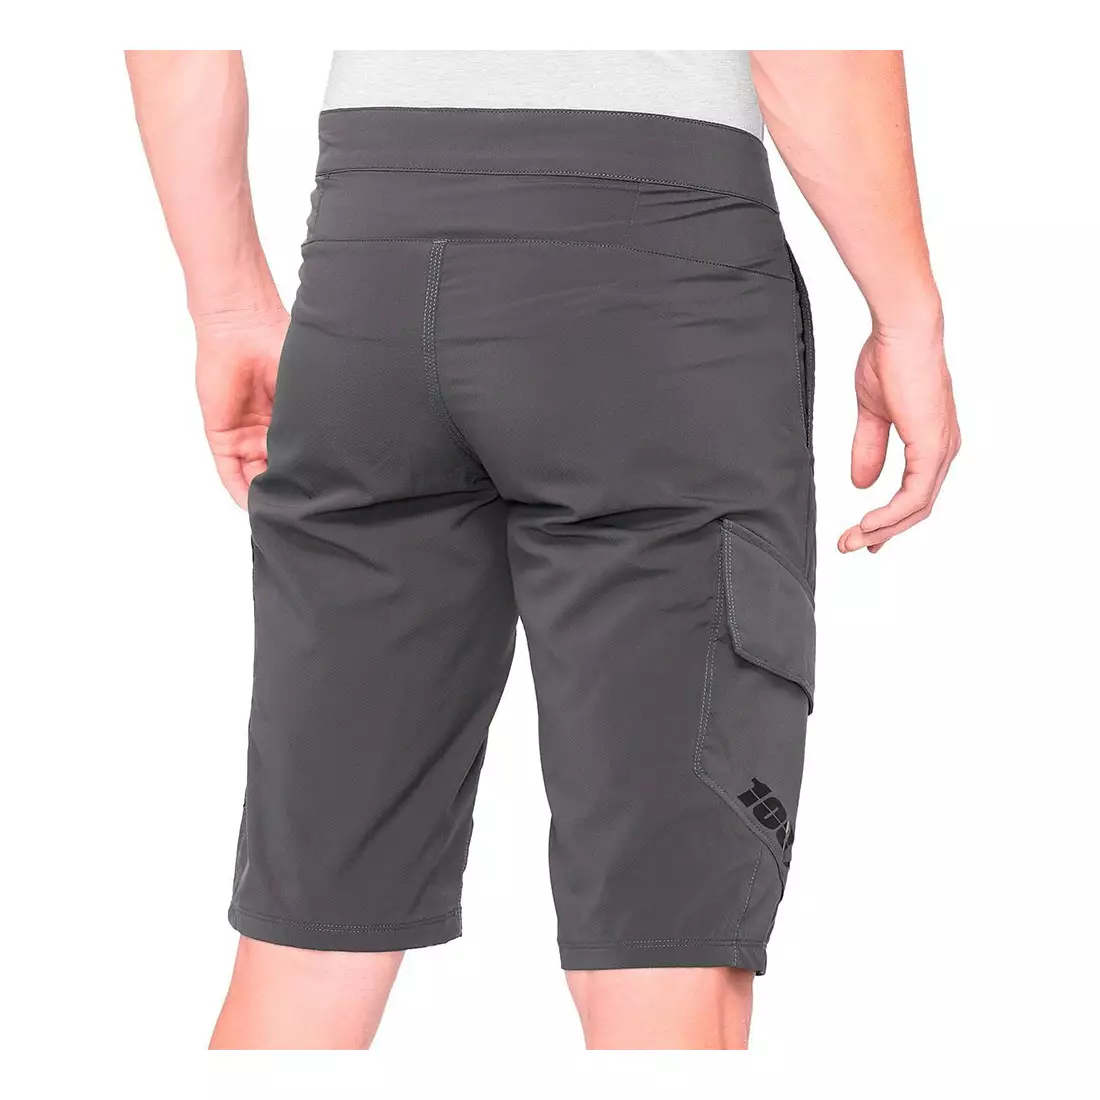 100% RIDECAMP Men's cycling shorts, grey